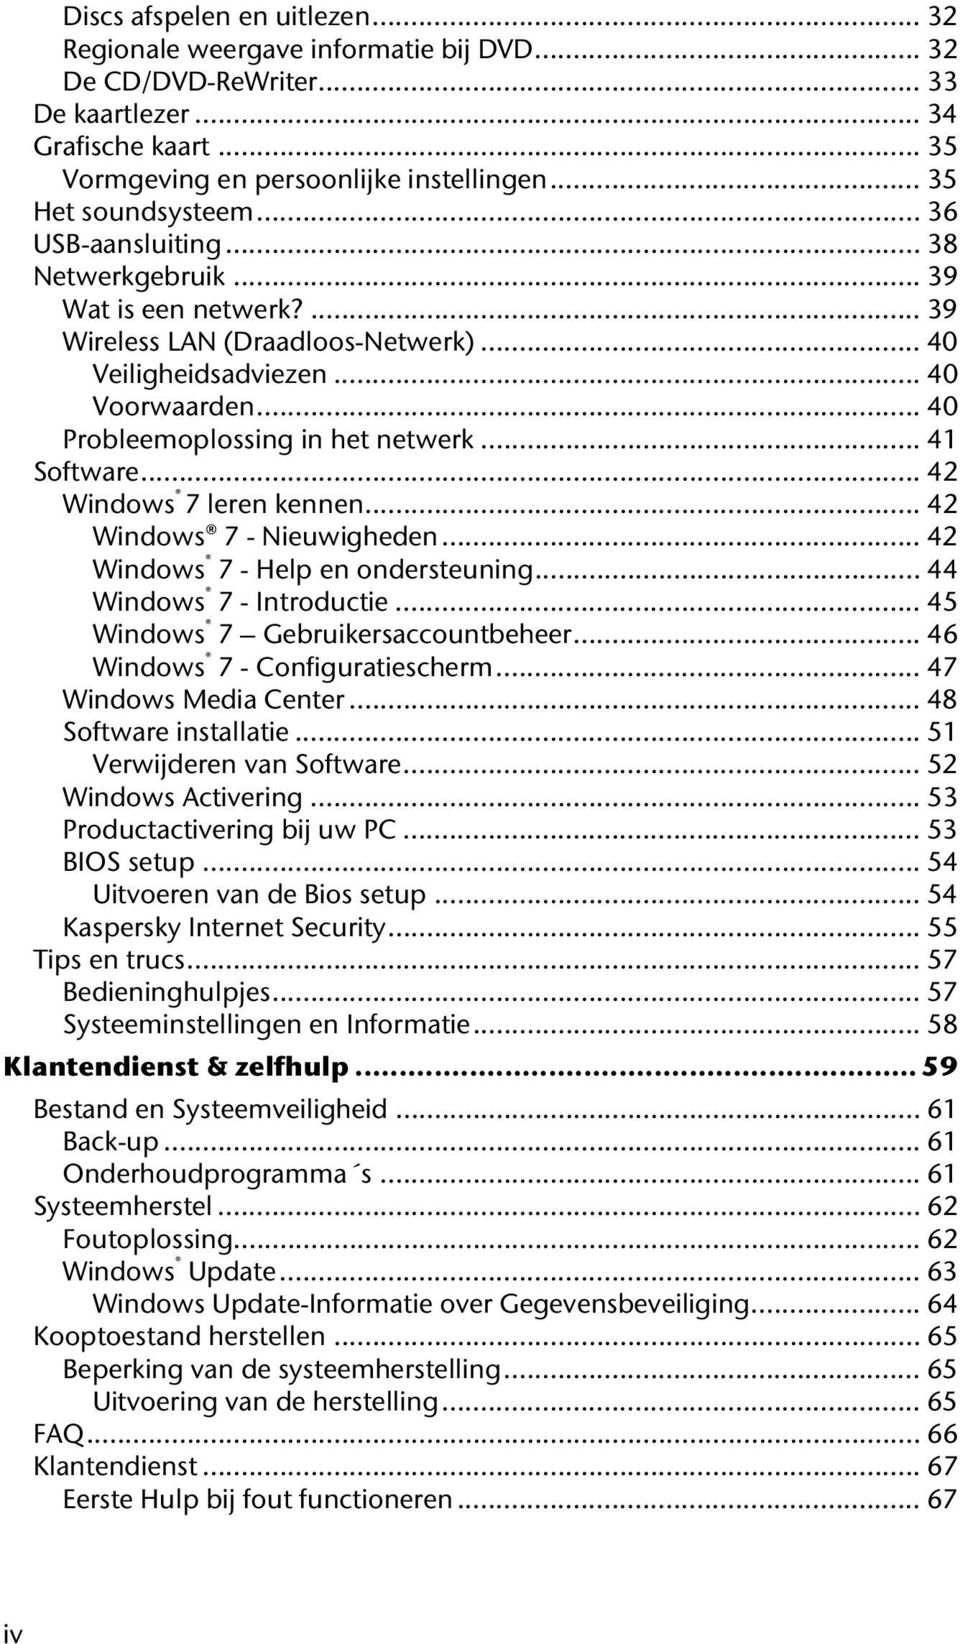 .. 40 Probleemoplossing in het netwerk... 41 Software... 42 Windows 7 leren kennen... 42 Windows 7 - Nieuwigheden... 42 Windows 7 - Help en ondersteuning... 44 Windows 7 - Introductie.